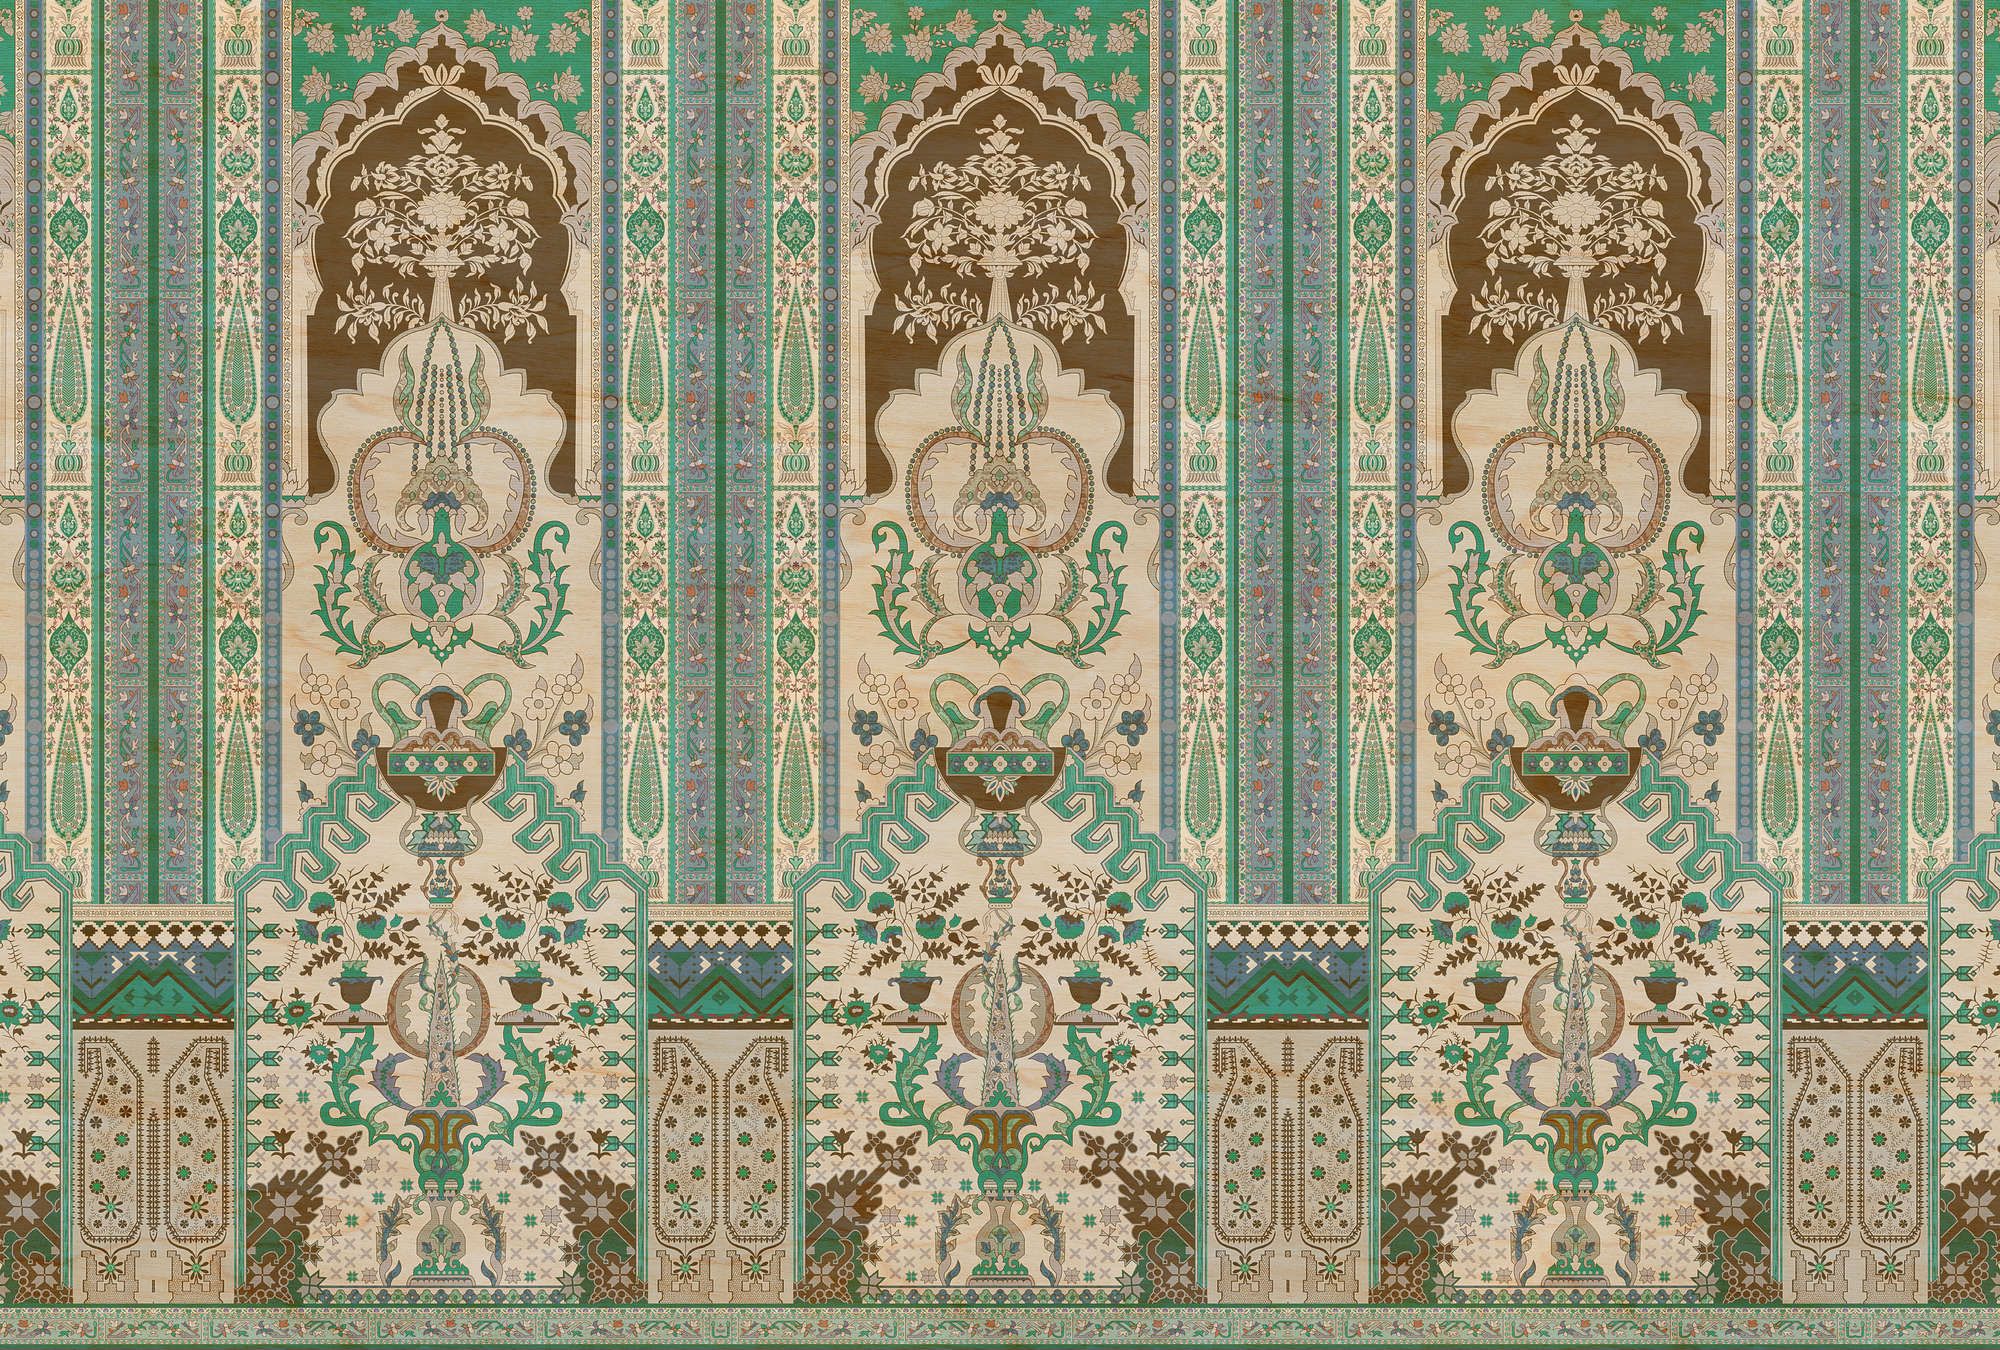             Fotomural »tara« - Revestimiento ornamental con textura de madera contrachapada - Verde, beige | Material sin tejer liso, ligeramente nacarado
        